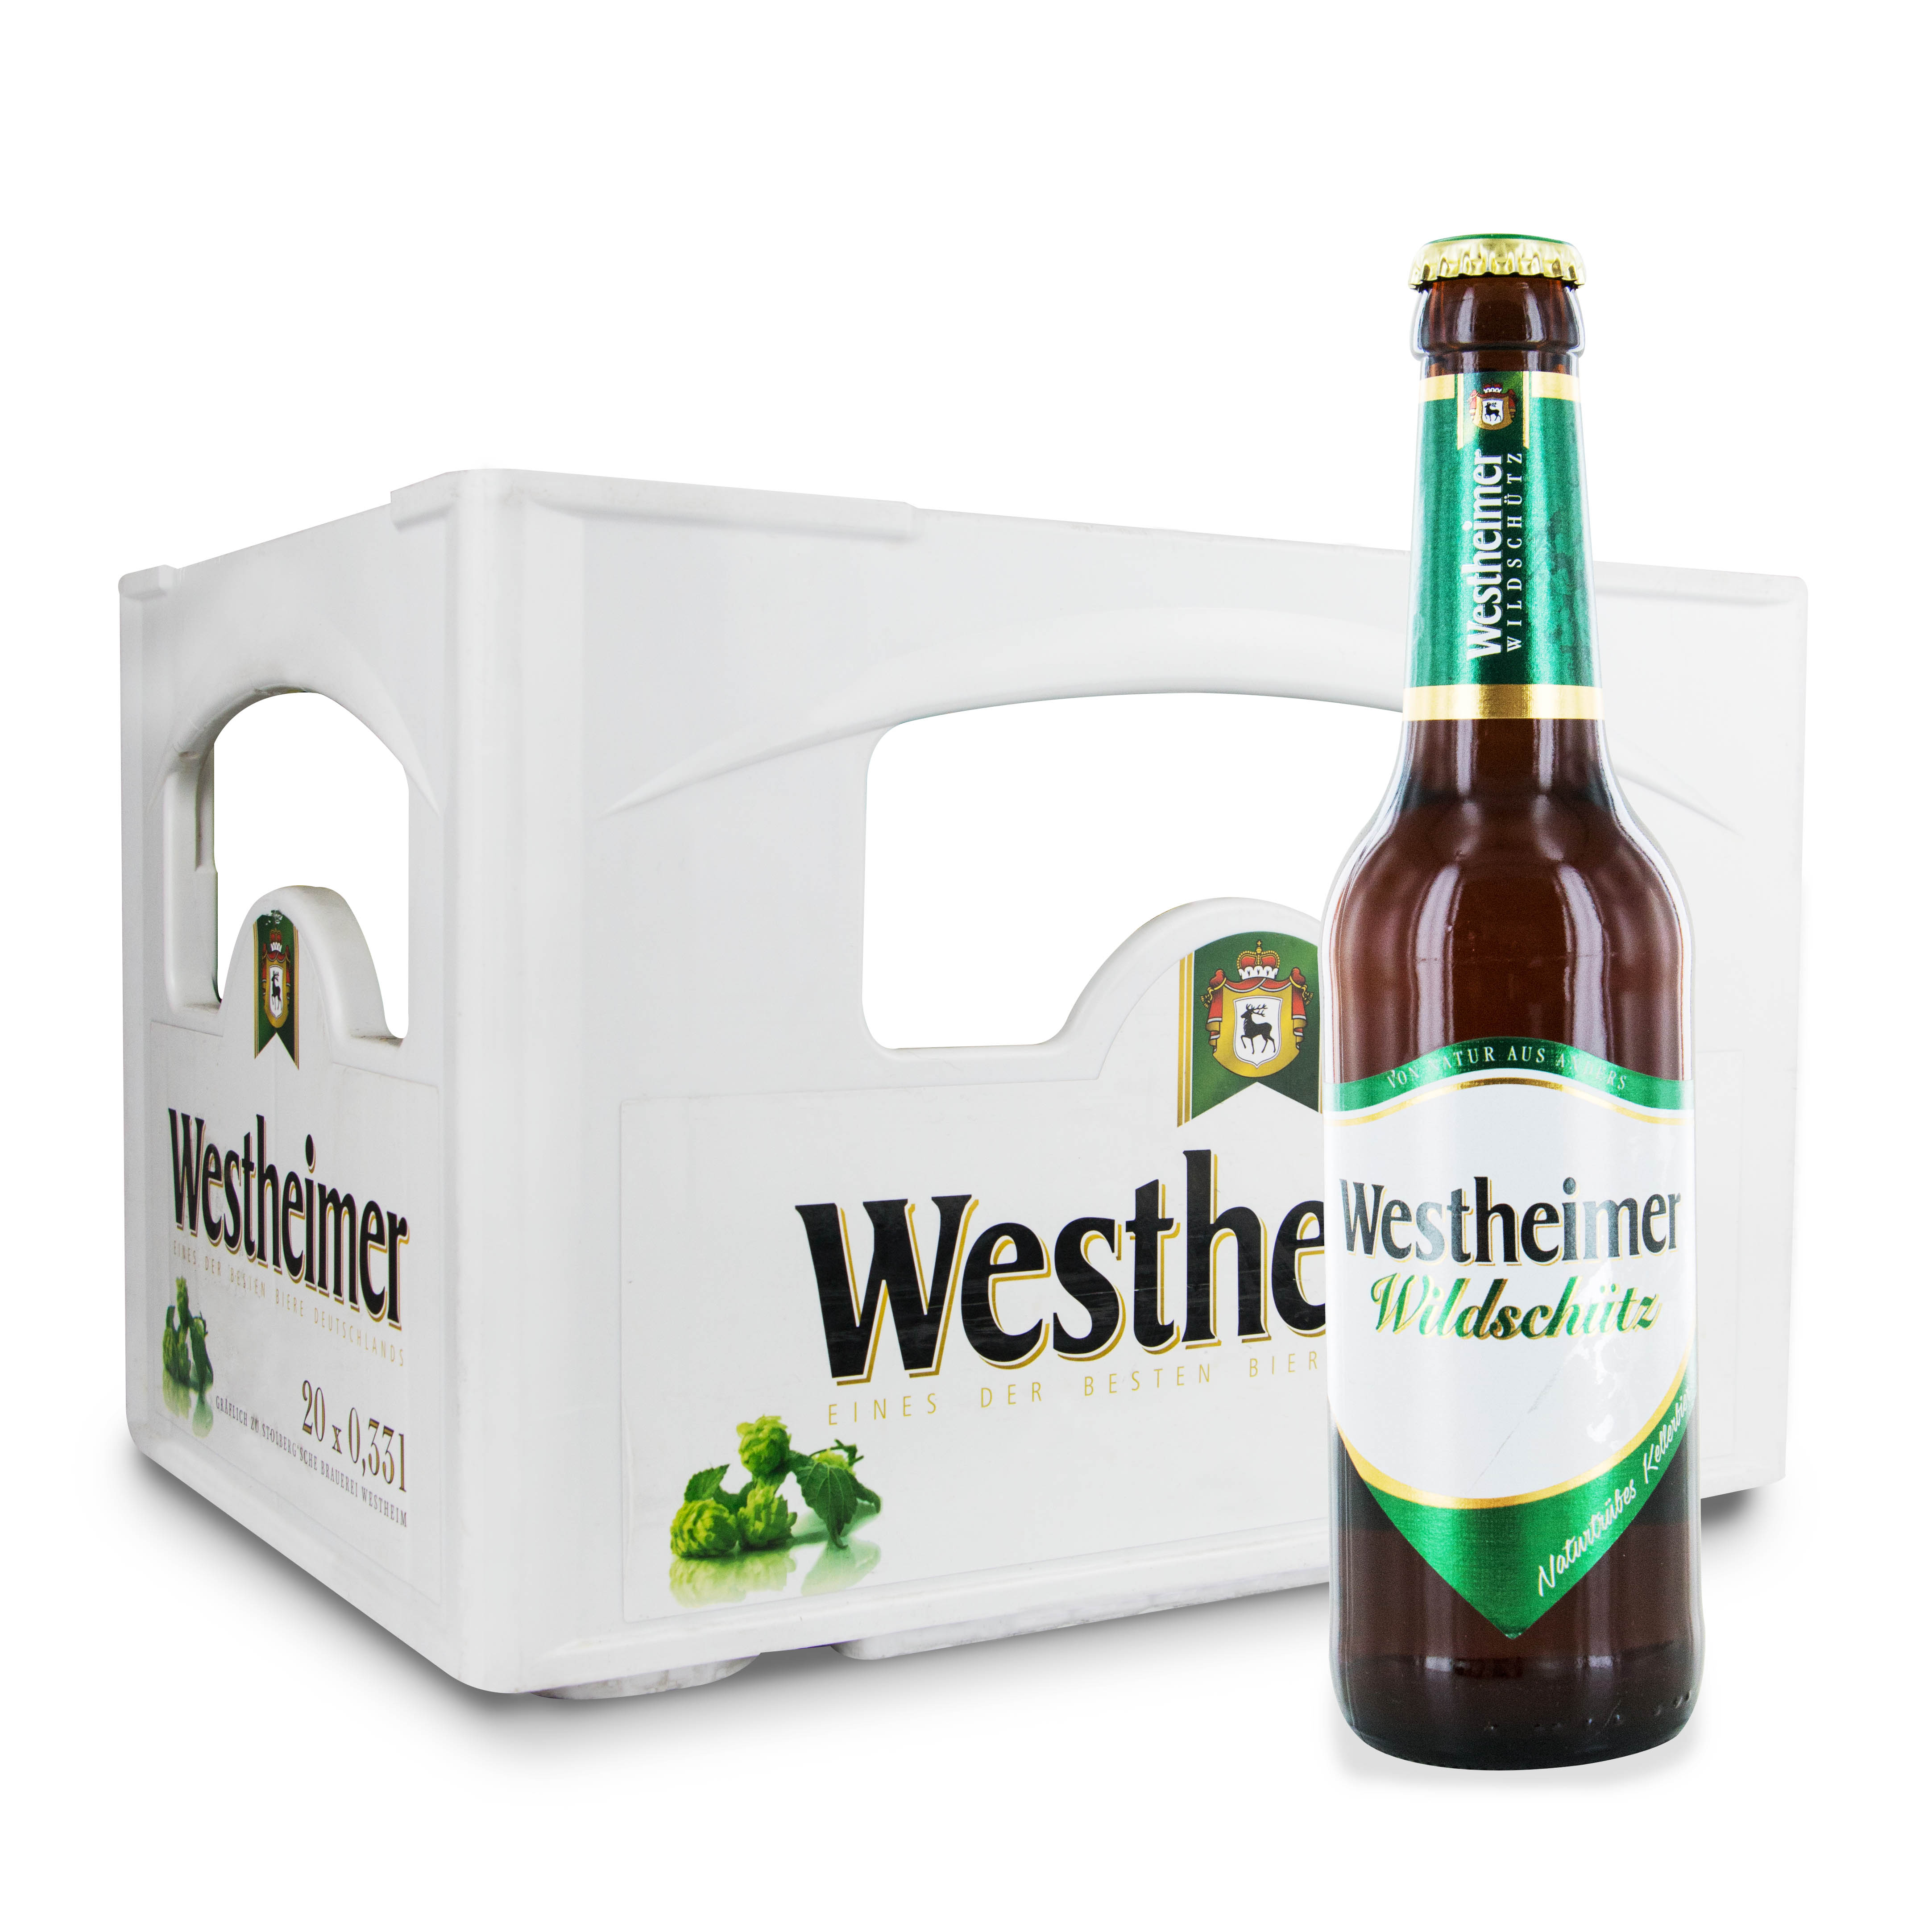 Westheimer Wildschütz Bier in der Kiste-zoom